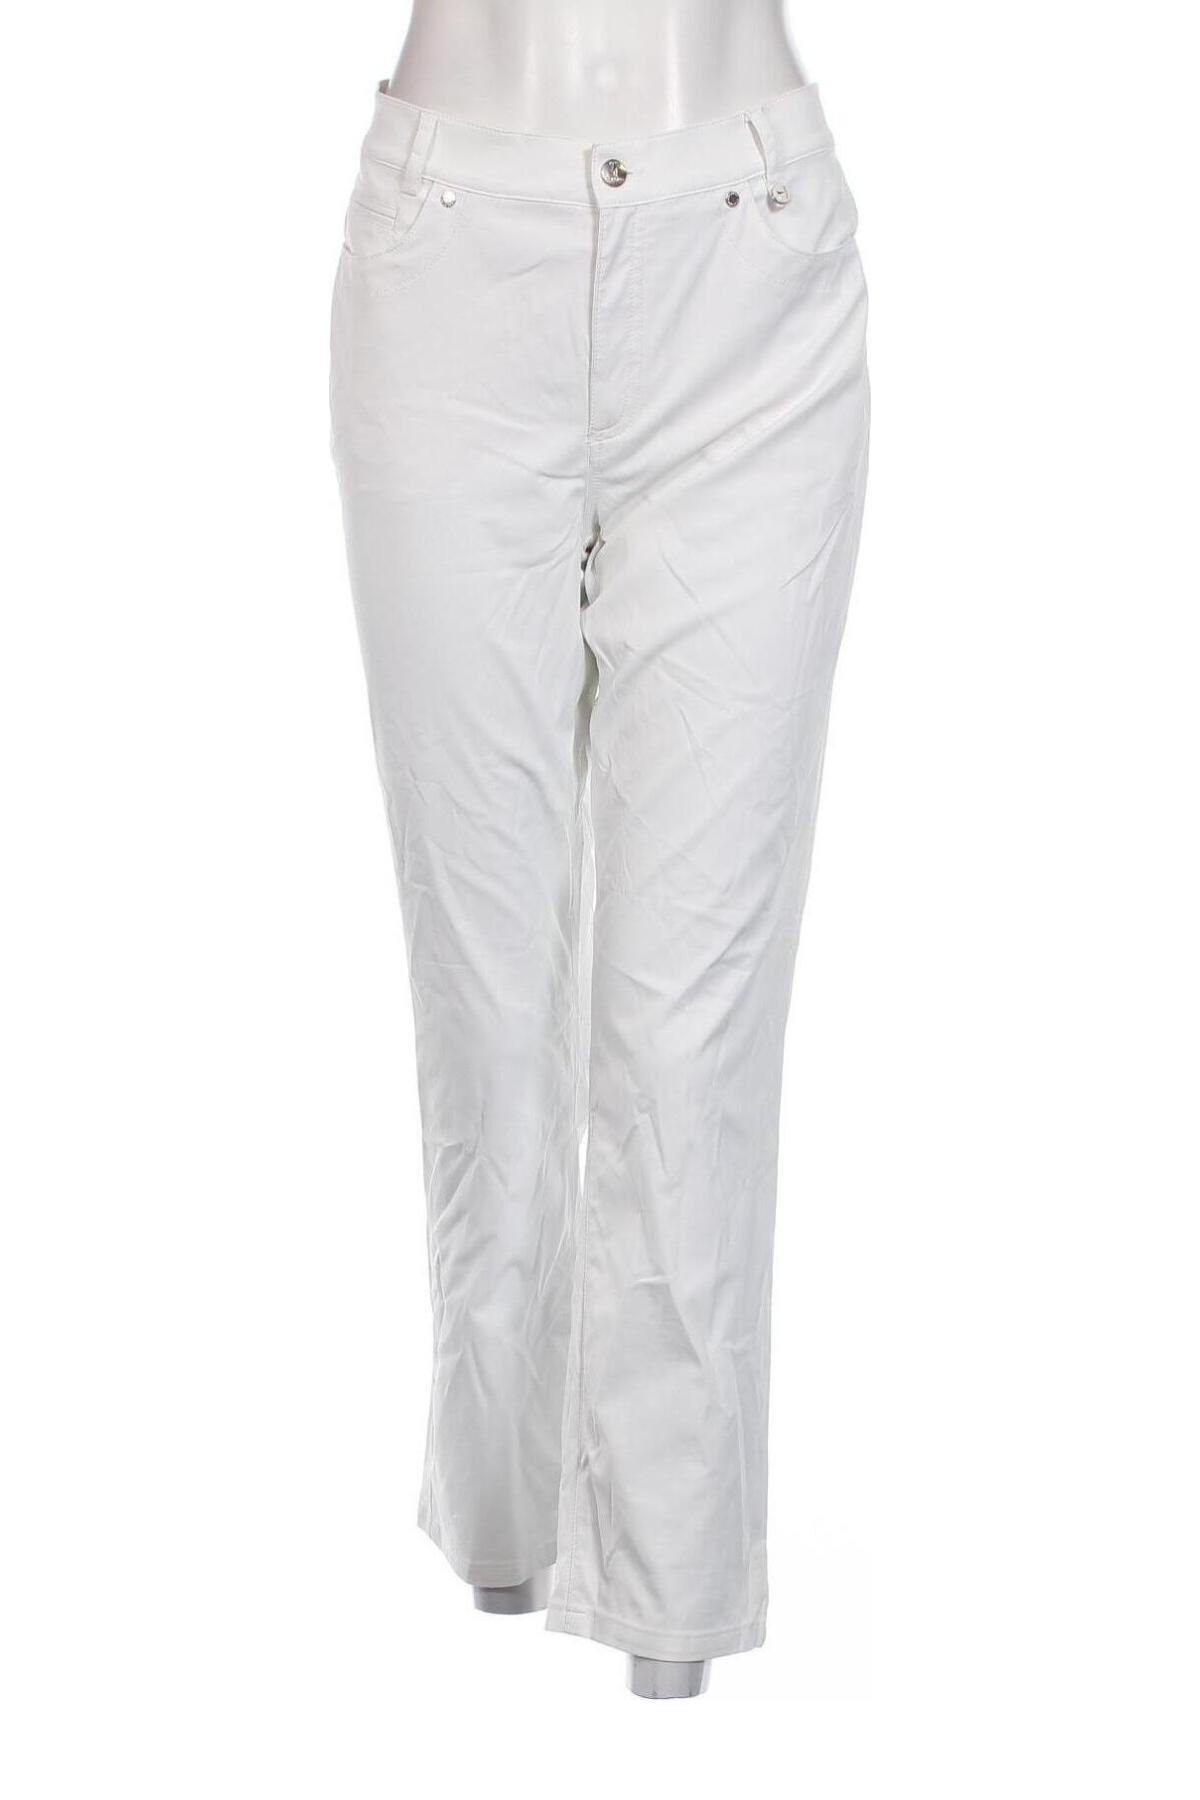 Γυναικείο παντελόνι Golfino, Μέγεθος L, Χρώμα Λευκό, Τιμή 23,97 €